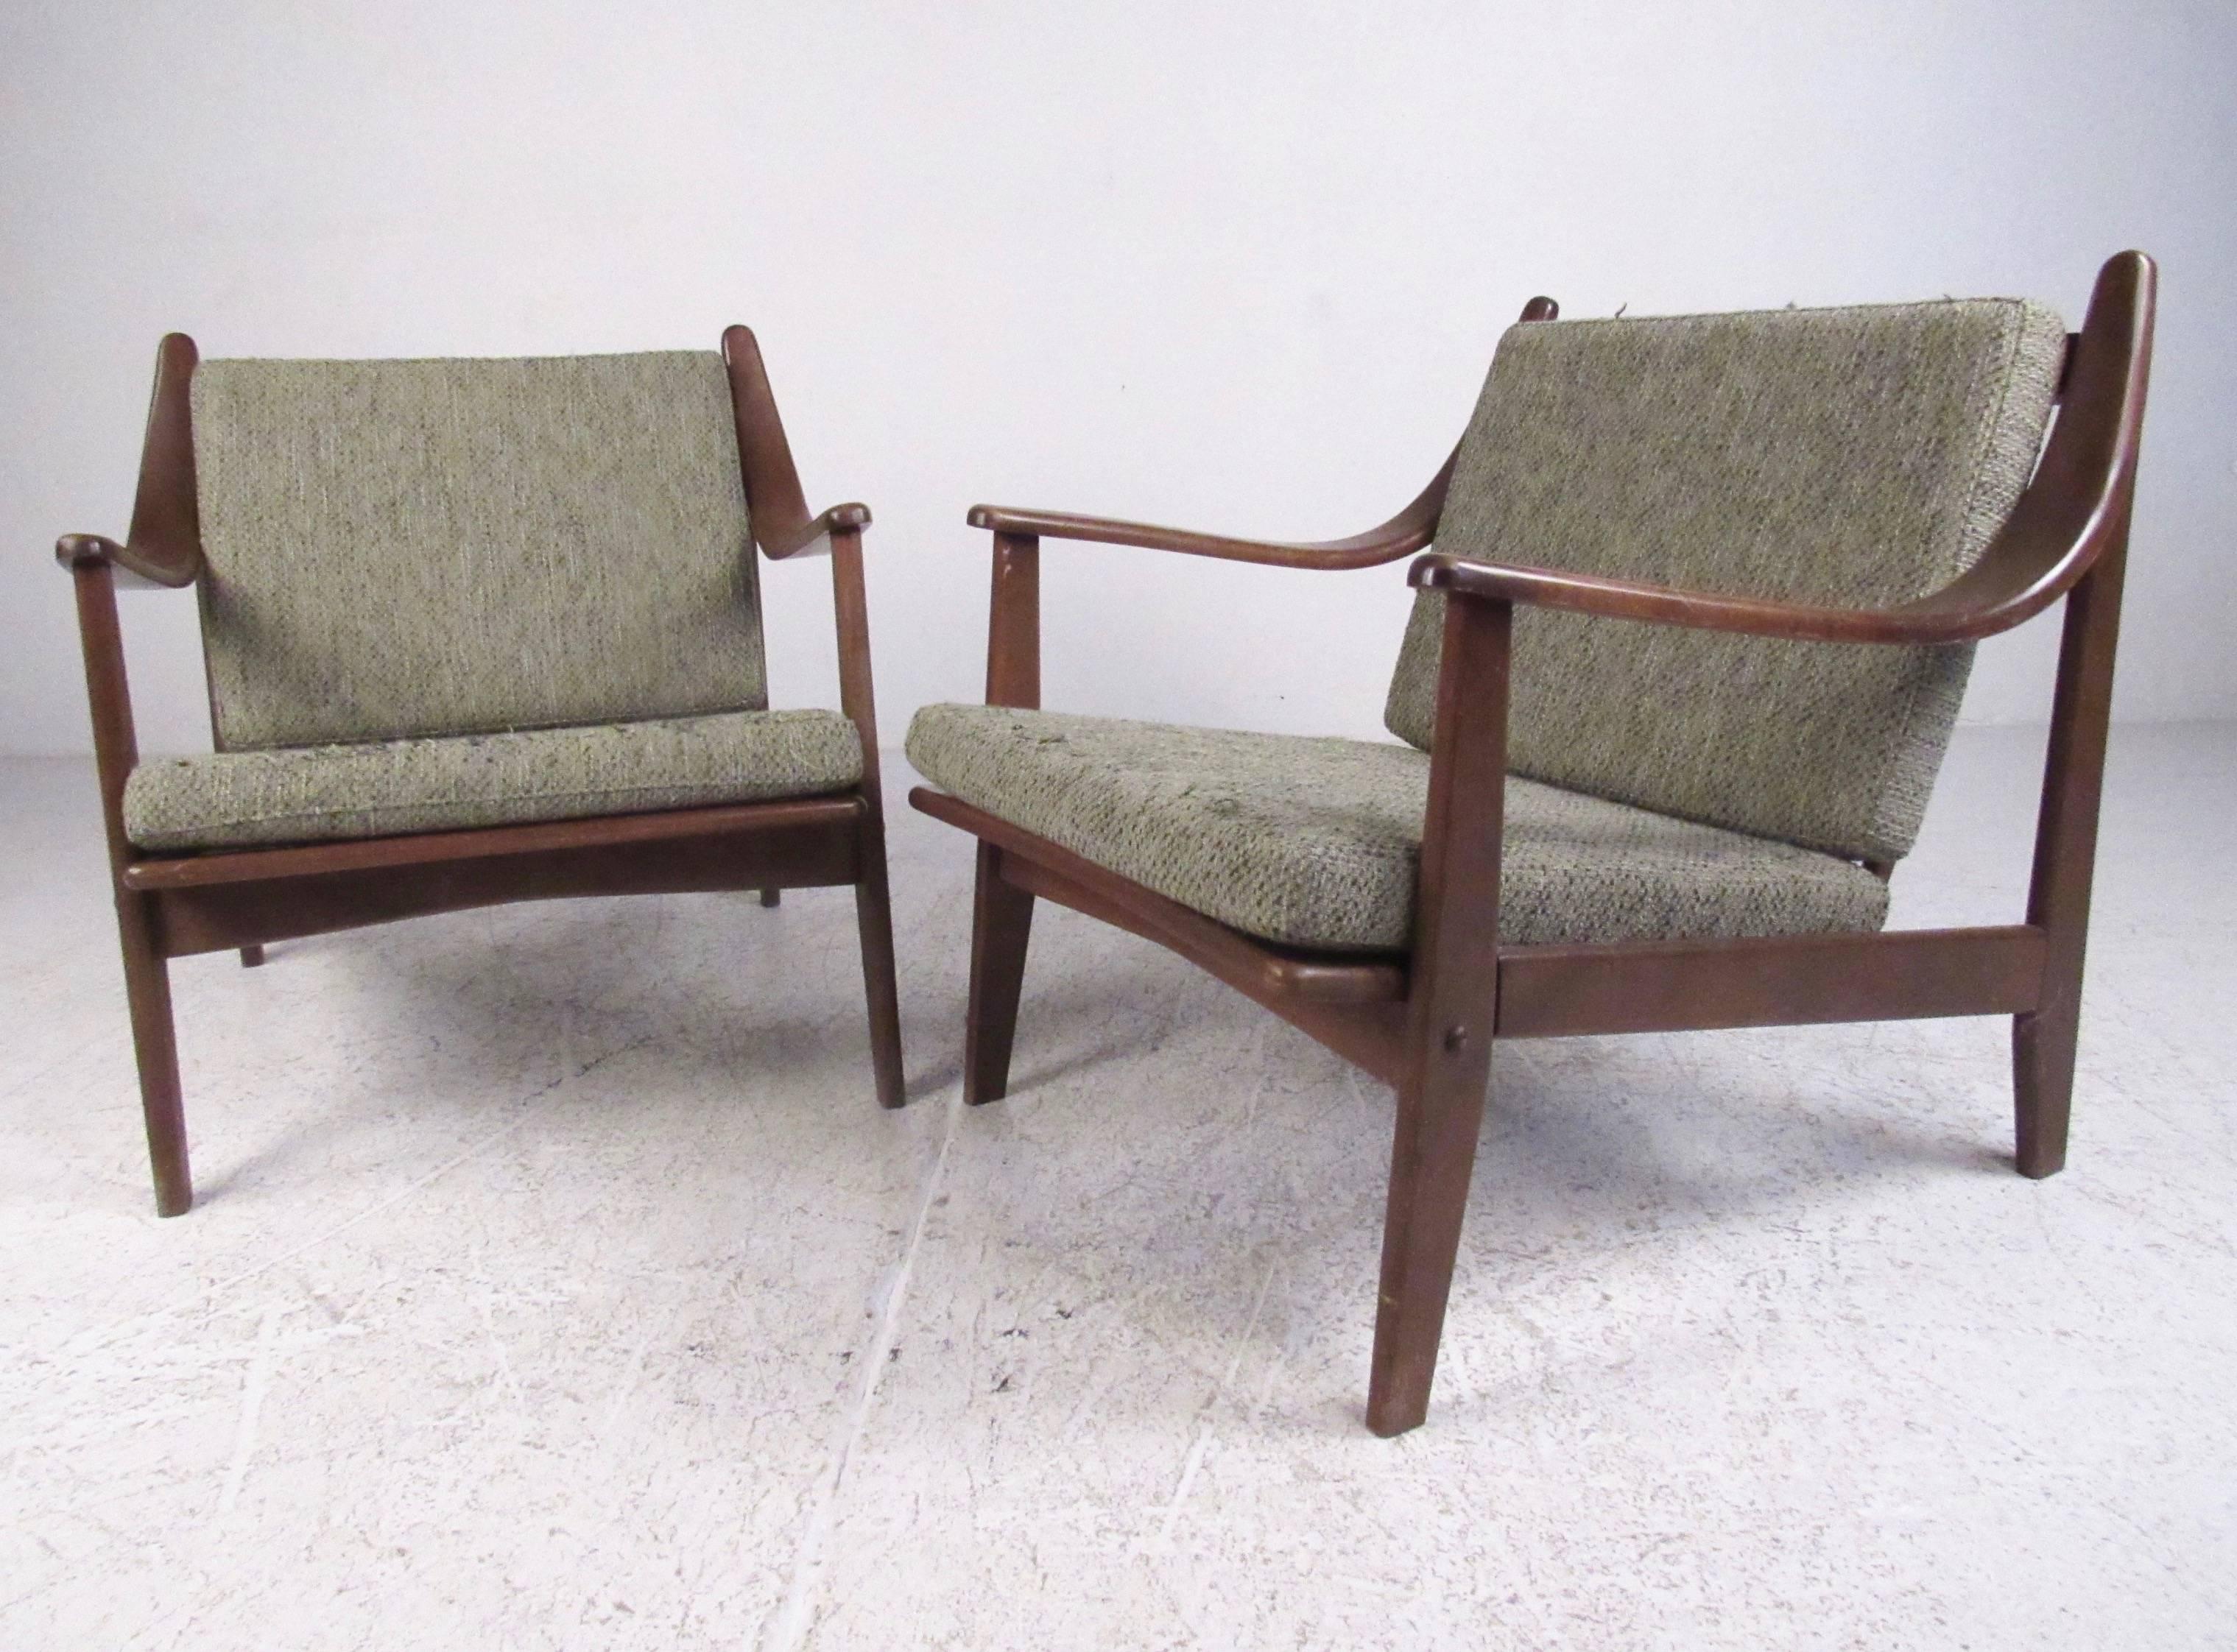 Dieses stilvolle Paar Mid-Century Modern Lounge Chairs besteht aus einer geschnitzten Walnusskonstruktion mit bequemer Vintage-Polsterung. Spingle Backs und einzigartige schräge Armlehnen ergänzen den dänisch-modernen Finn-Juhl-Stil des Paares.